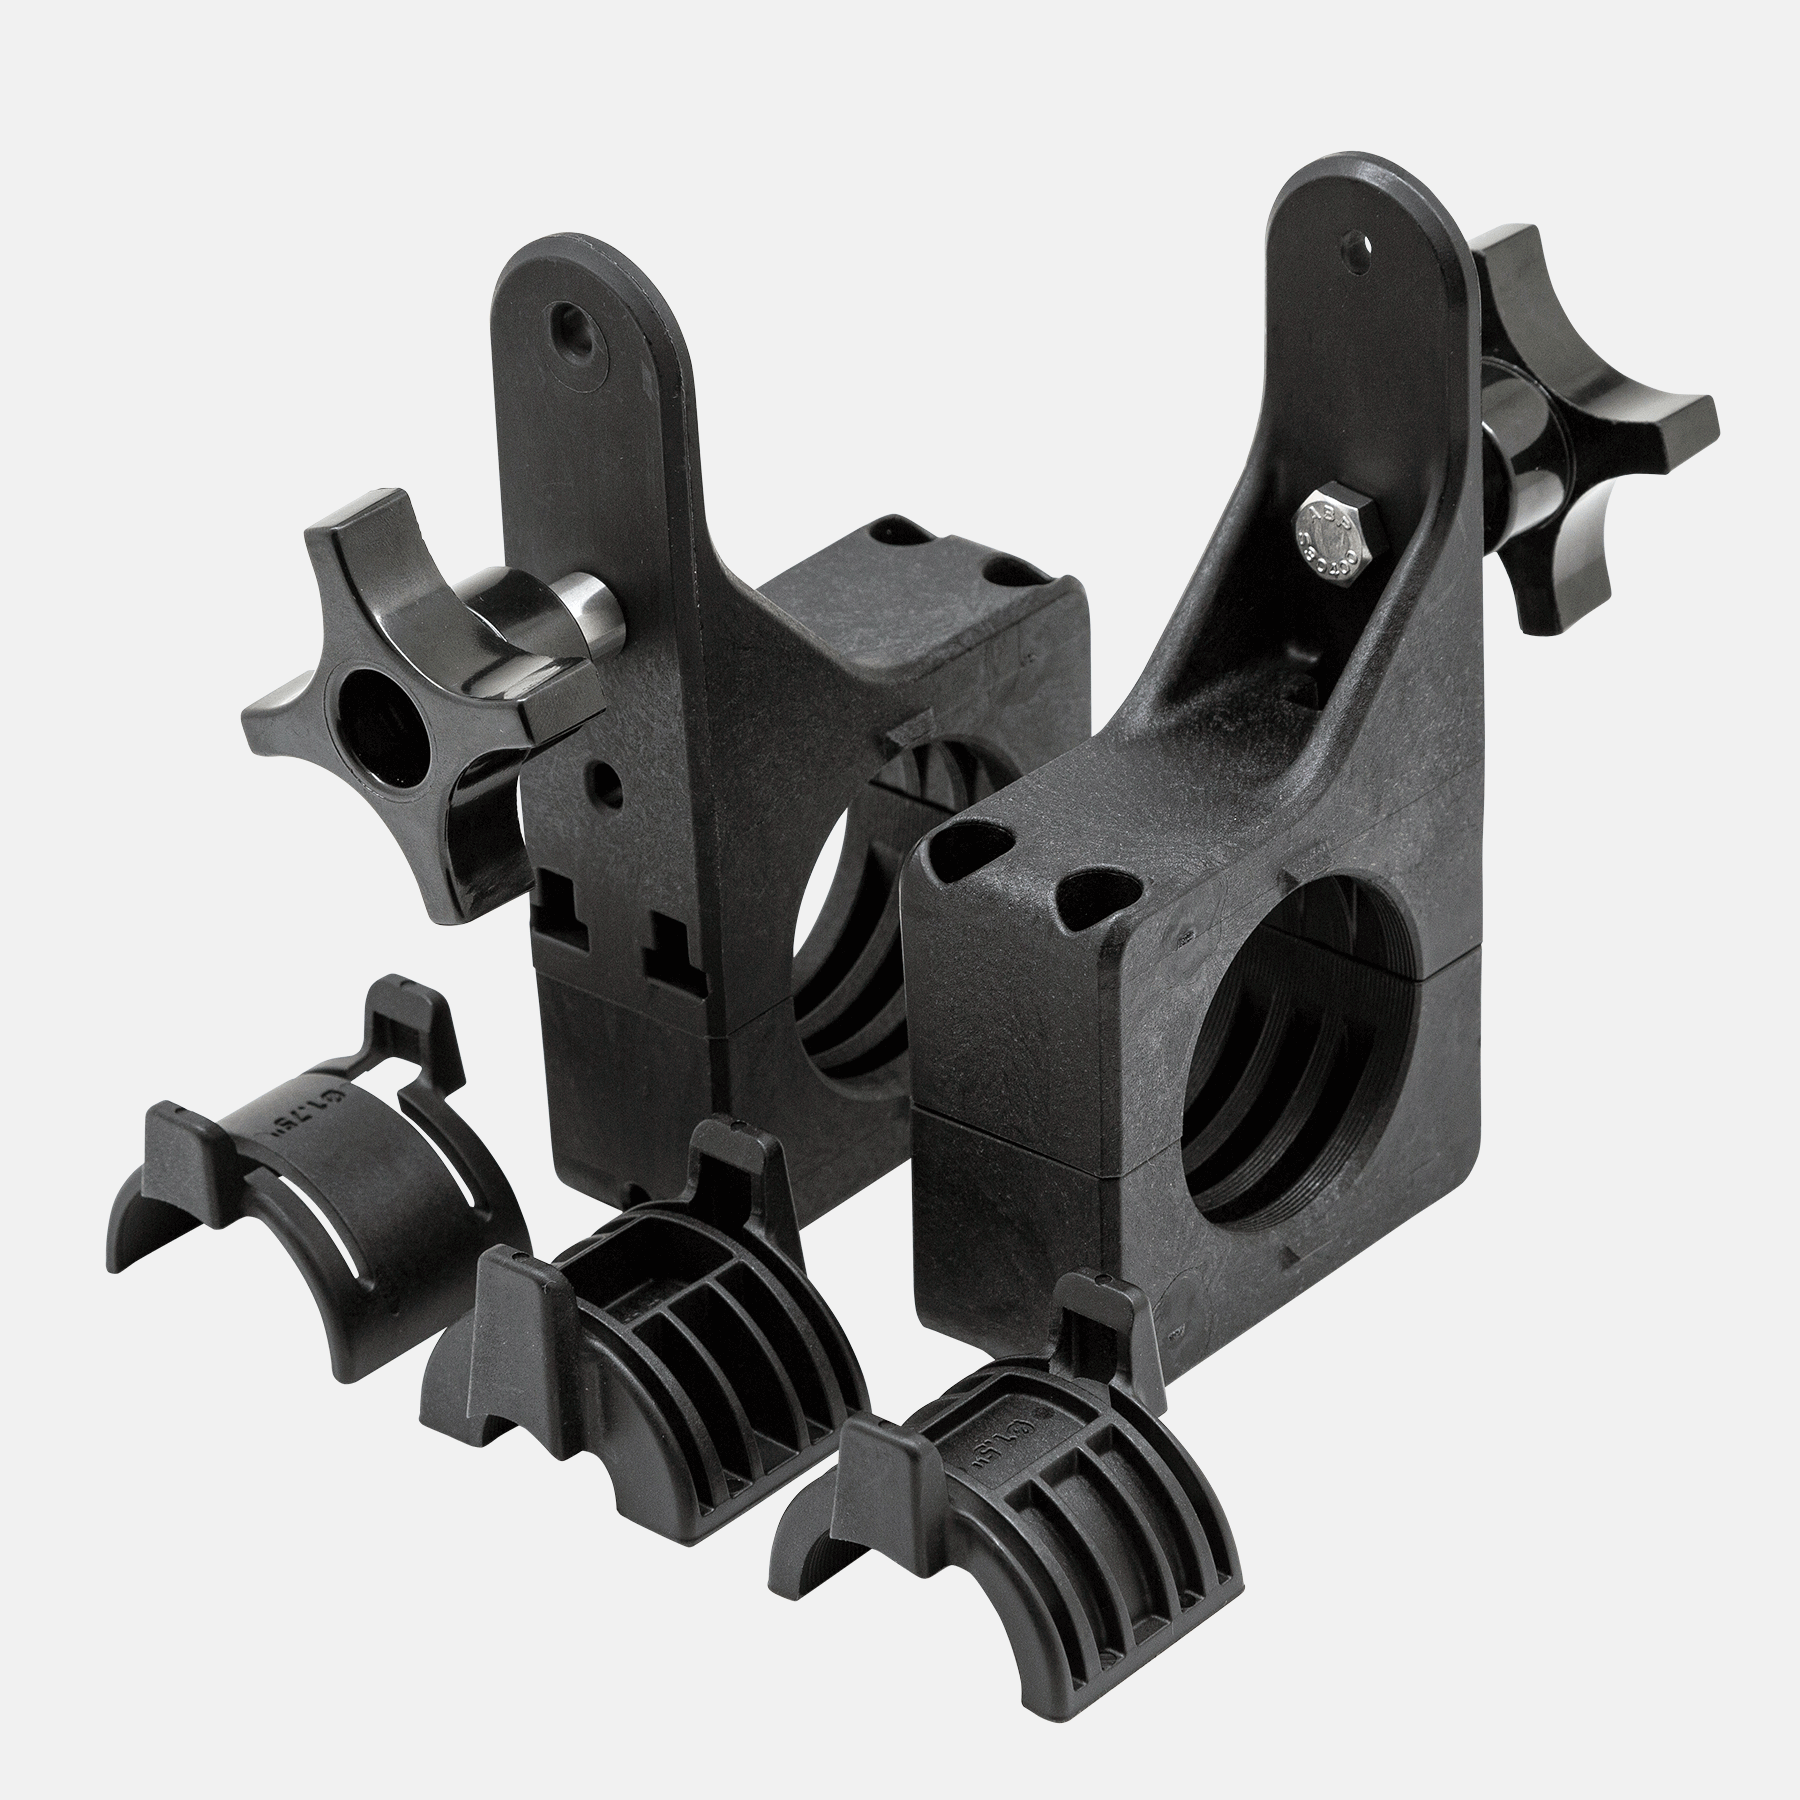 Quick Fist Hi-Lift Mounting Kit 25-64 mm 2 pcs.